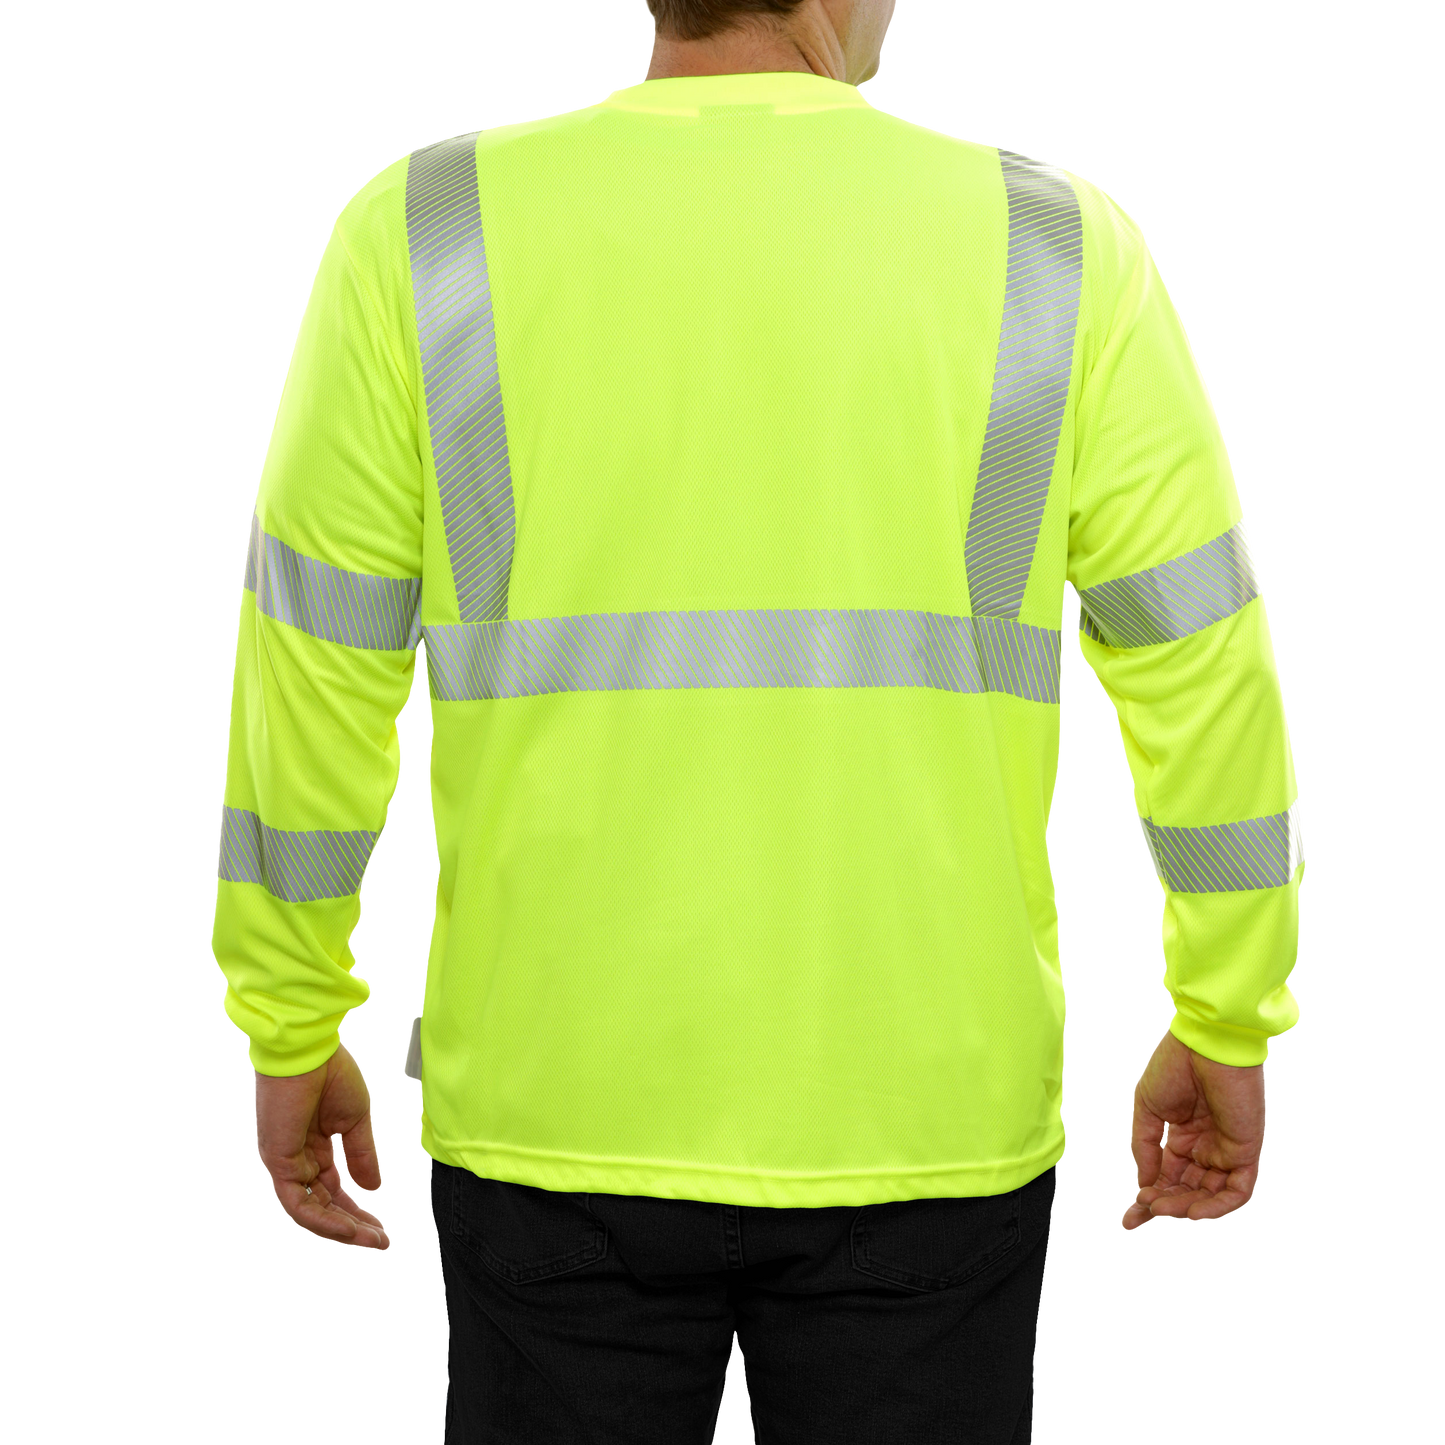 204CTLM Hi-Vis Long Sleeve Lime Birdseye Pocket Safety T-Shirt with 3MTM Comfort Trim